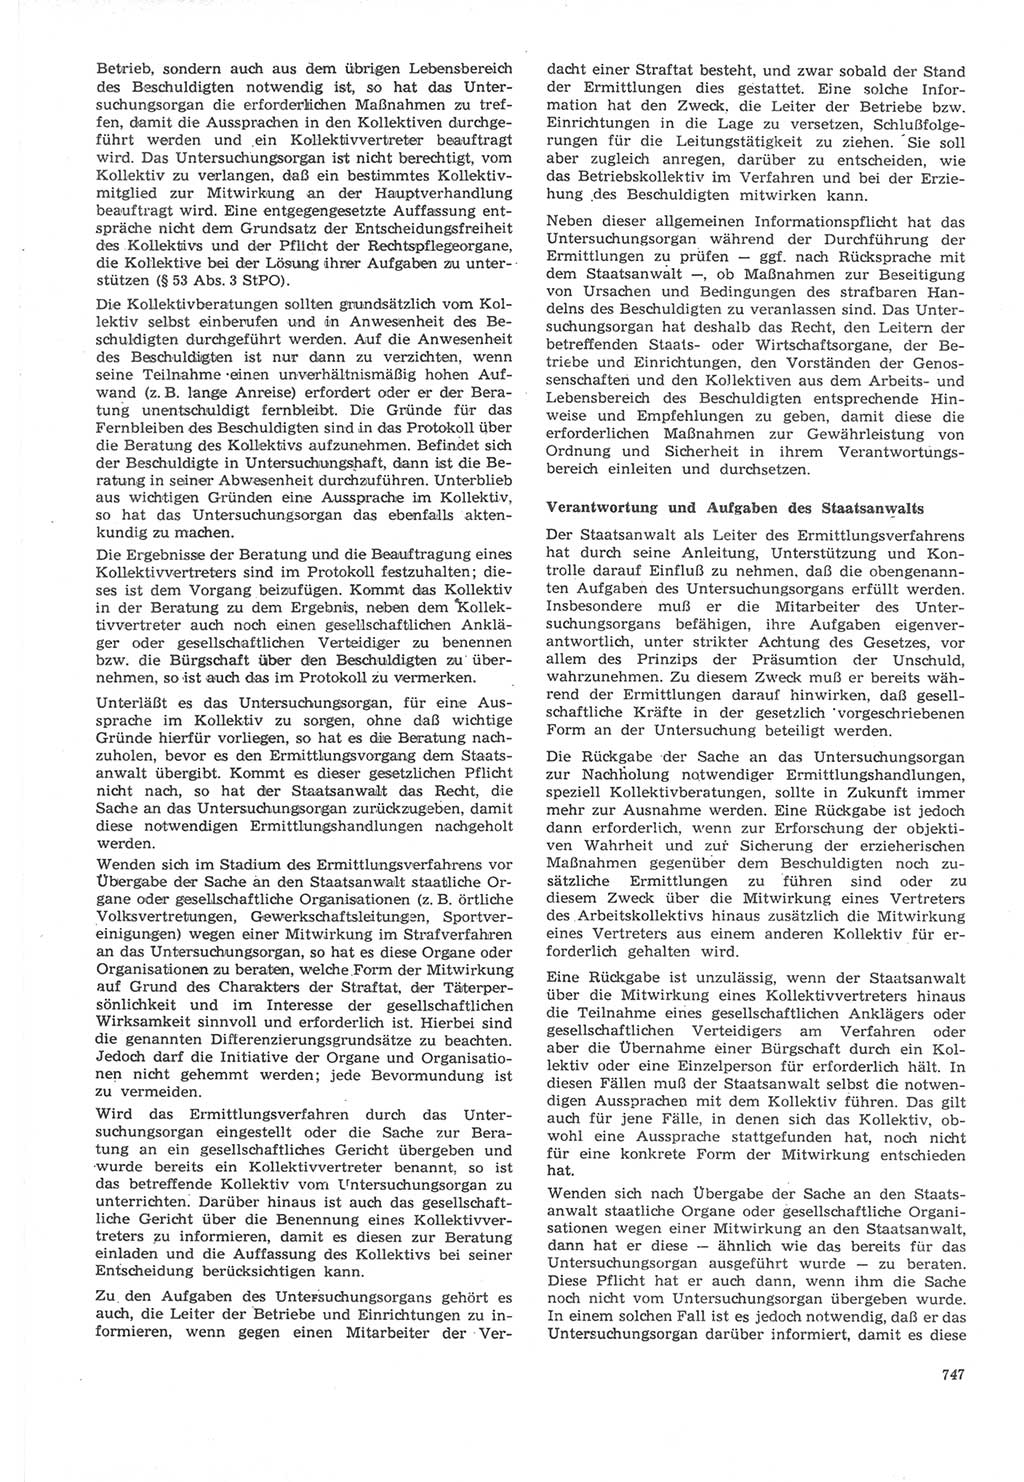 Neue Justiz (NJ), Zeitschrift für Recht und Rechtswissenschaft [Deutsche Demokratische Republik (DDR)], 22. Jahrgang 1968, Seite 747 (NJ DDR 1968, S. 747)